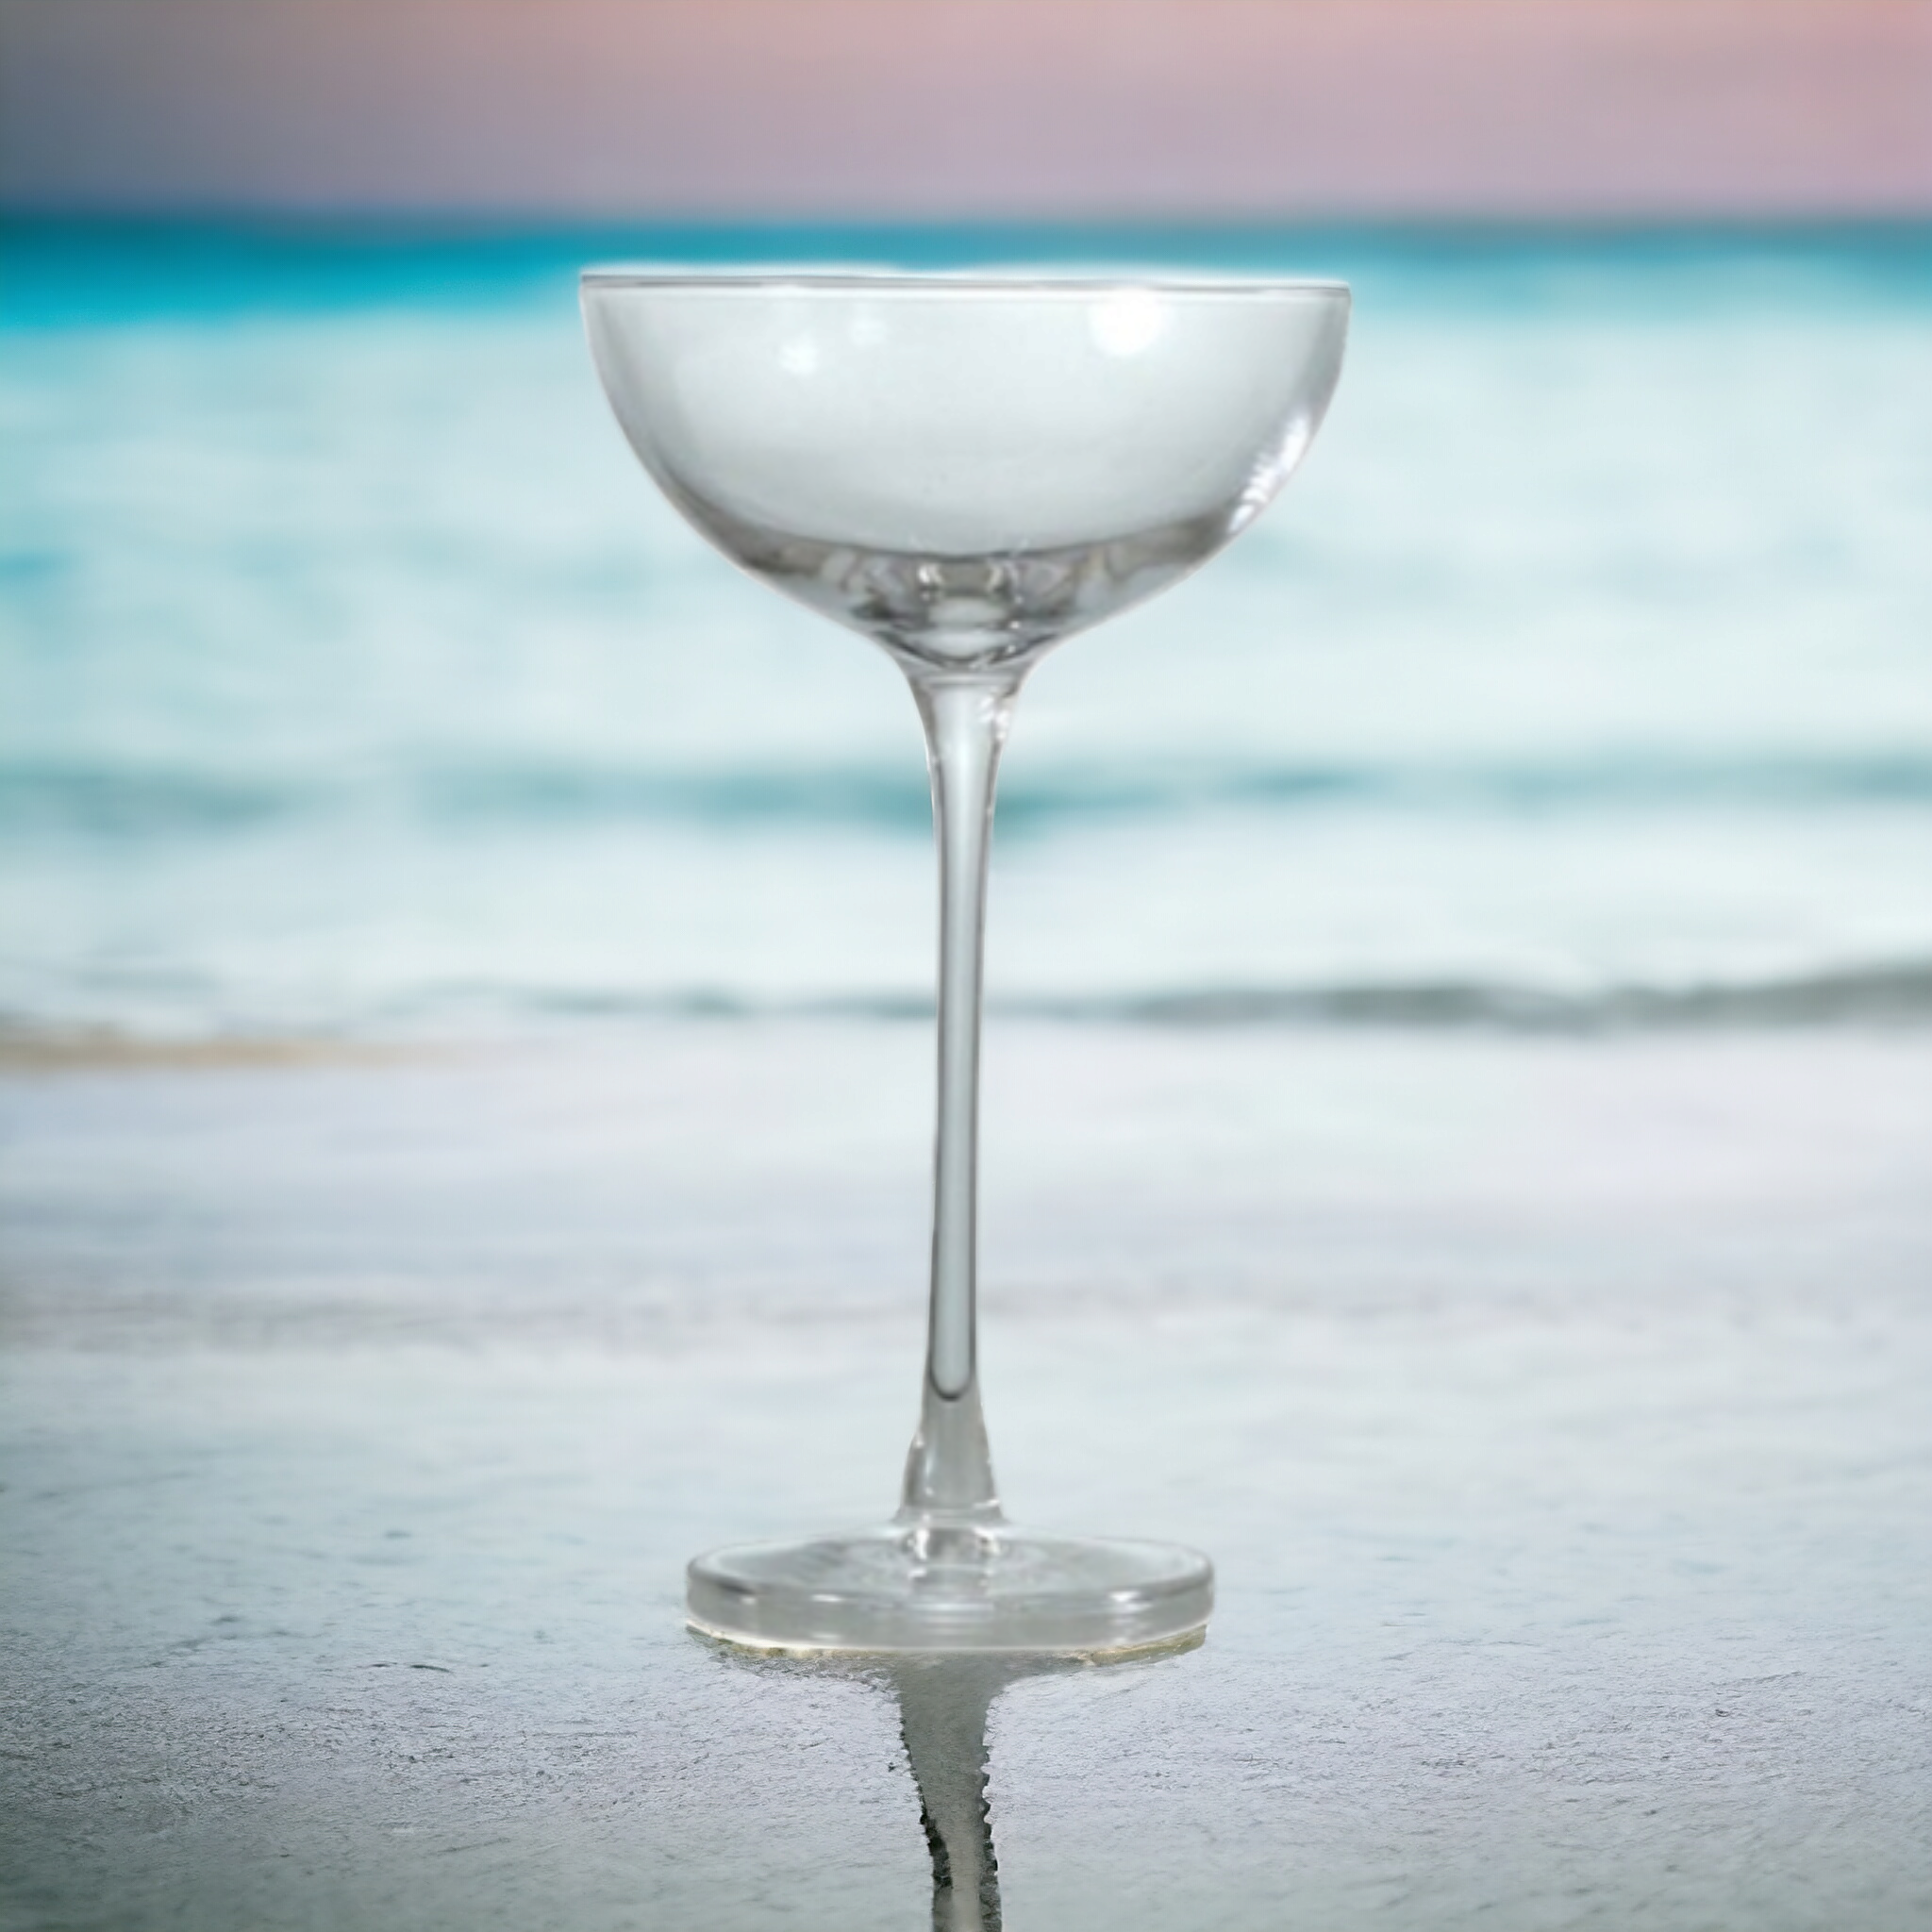 Pasabahce Nude Hepburn Cocktail Glass Tumbler 195ml 6pcs